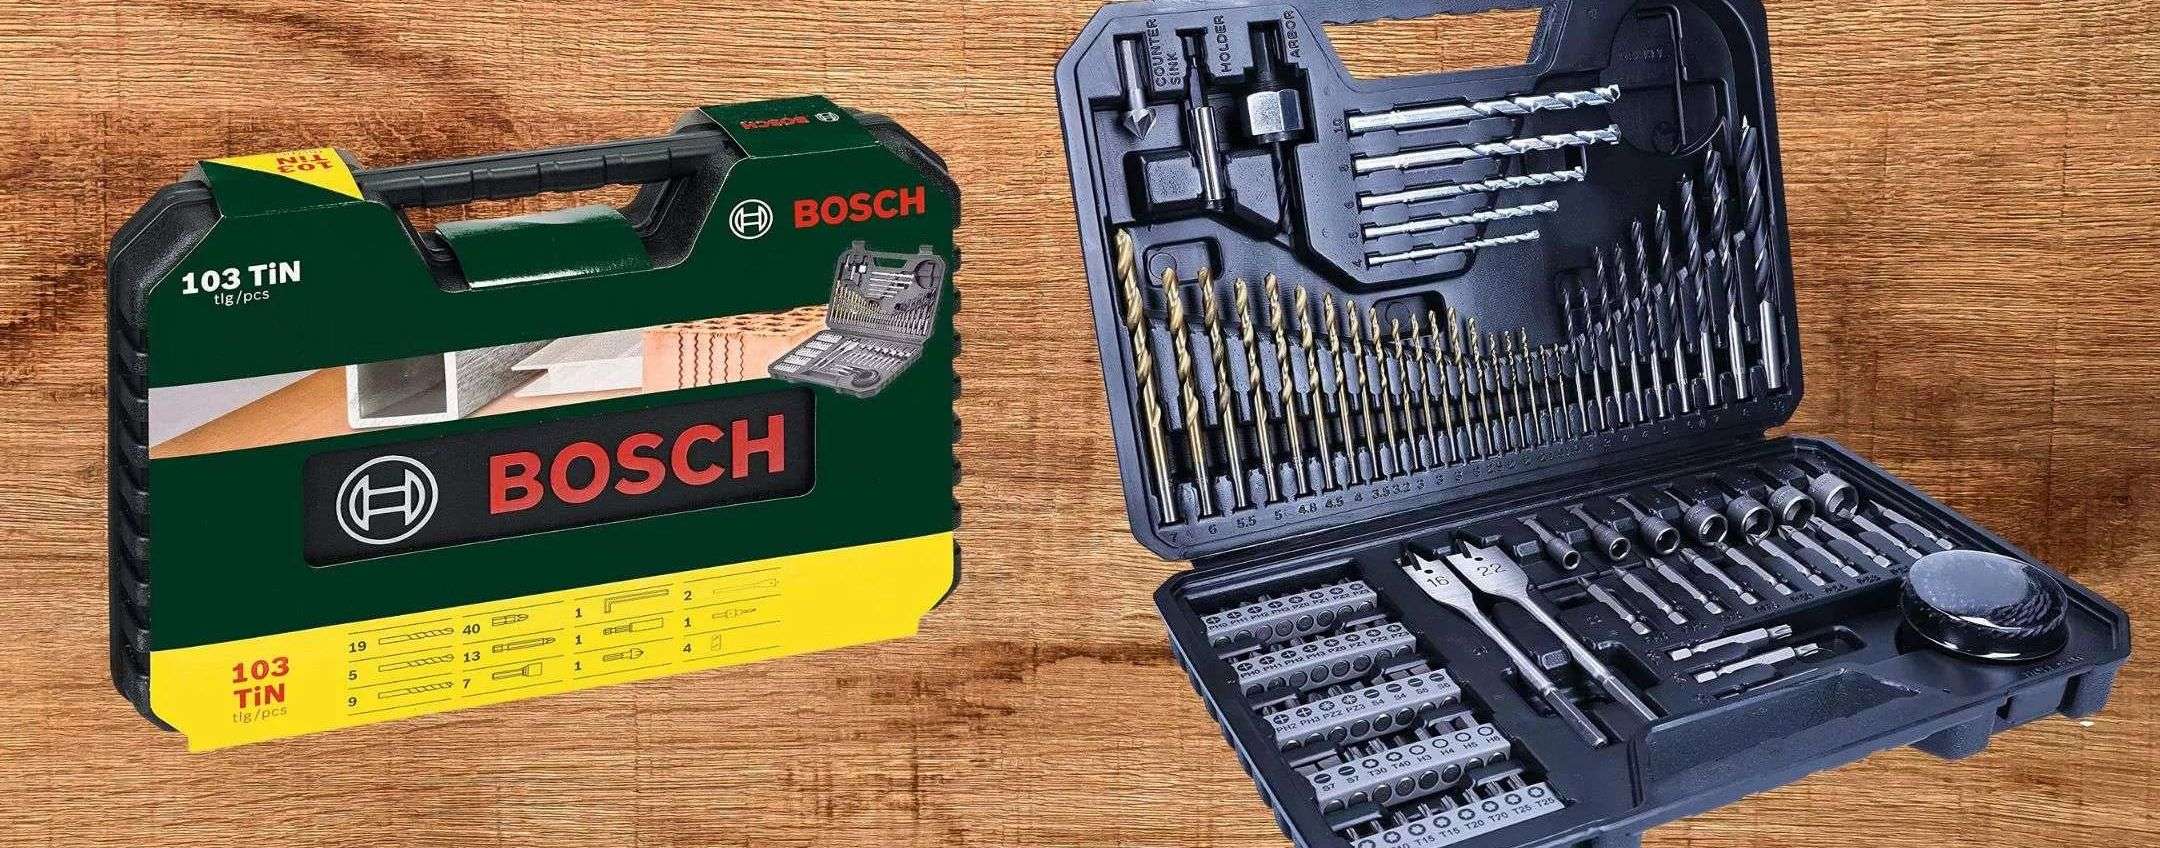 Bosch: GIGANTESCO kit 103 in 1 di qualità a prezzo ridicolo su  (24€)